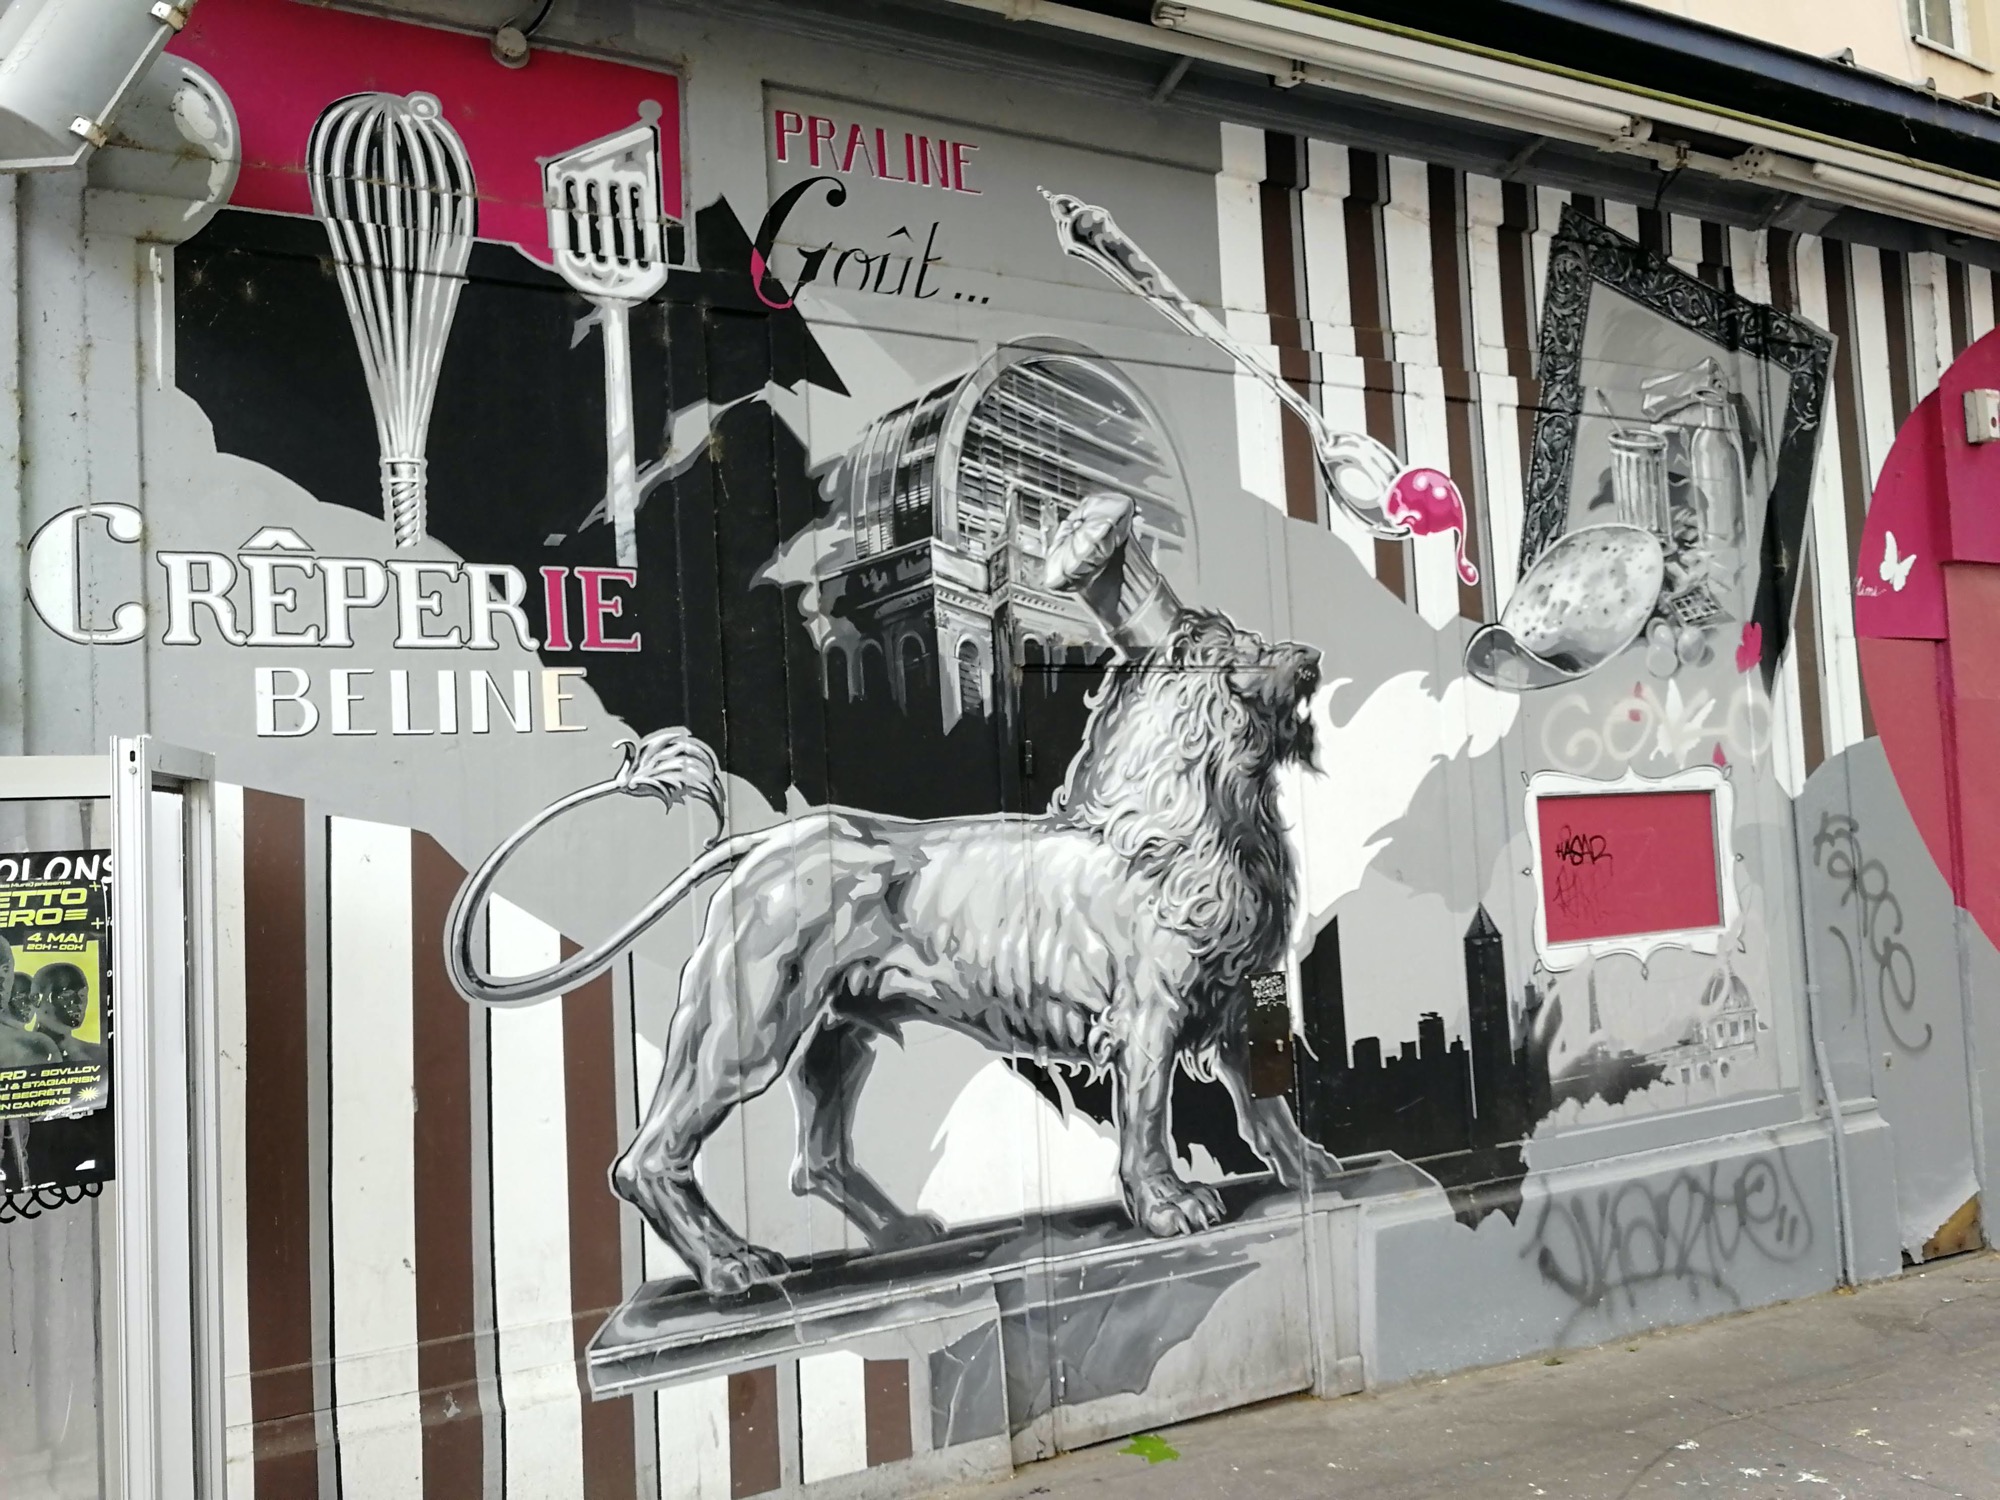 Graffiti 1551 Crêperie beline capturé par Rabot à Lyon France